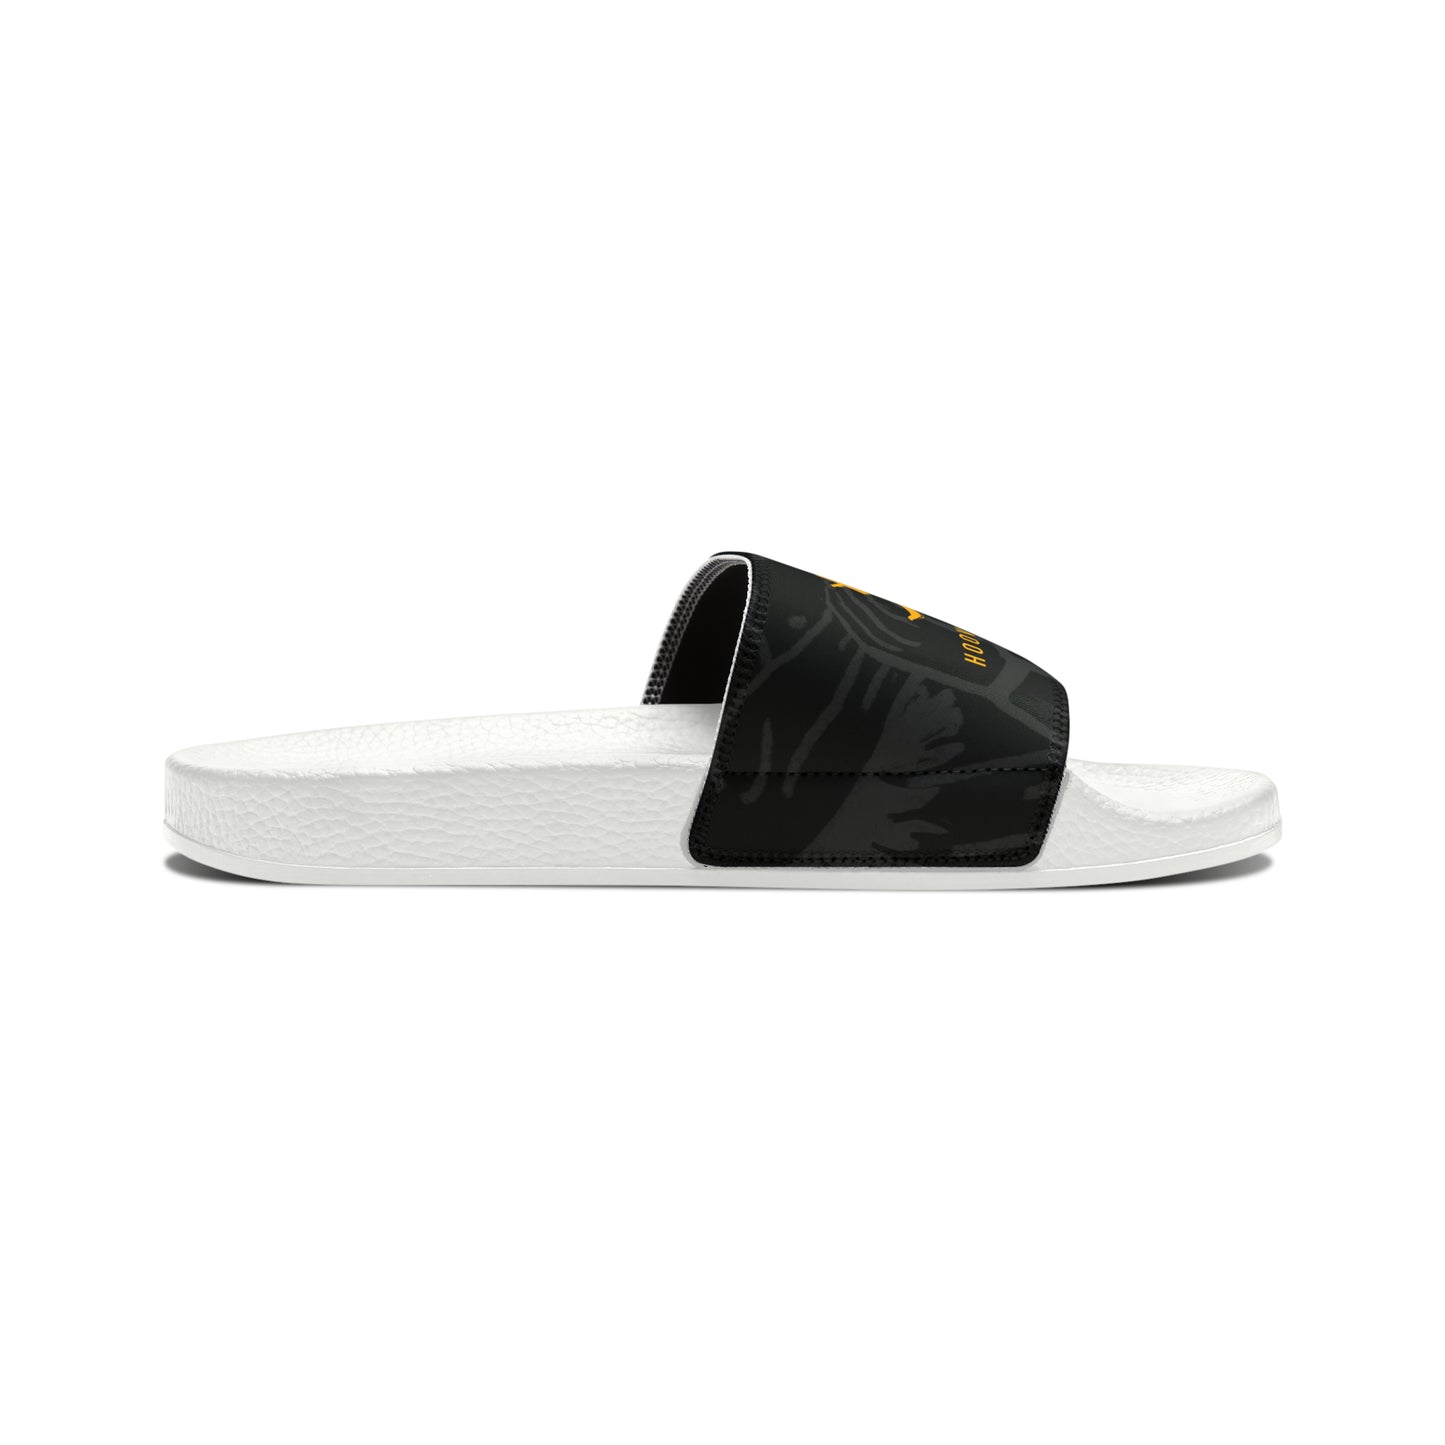 Dojo Slide Sandals (women's)